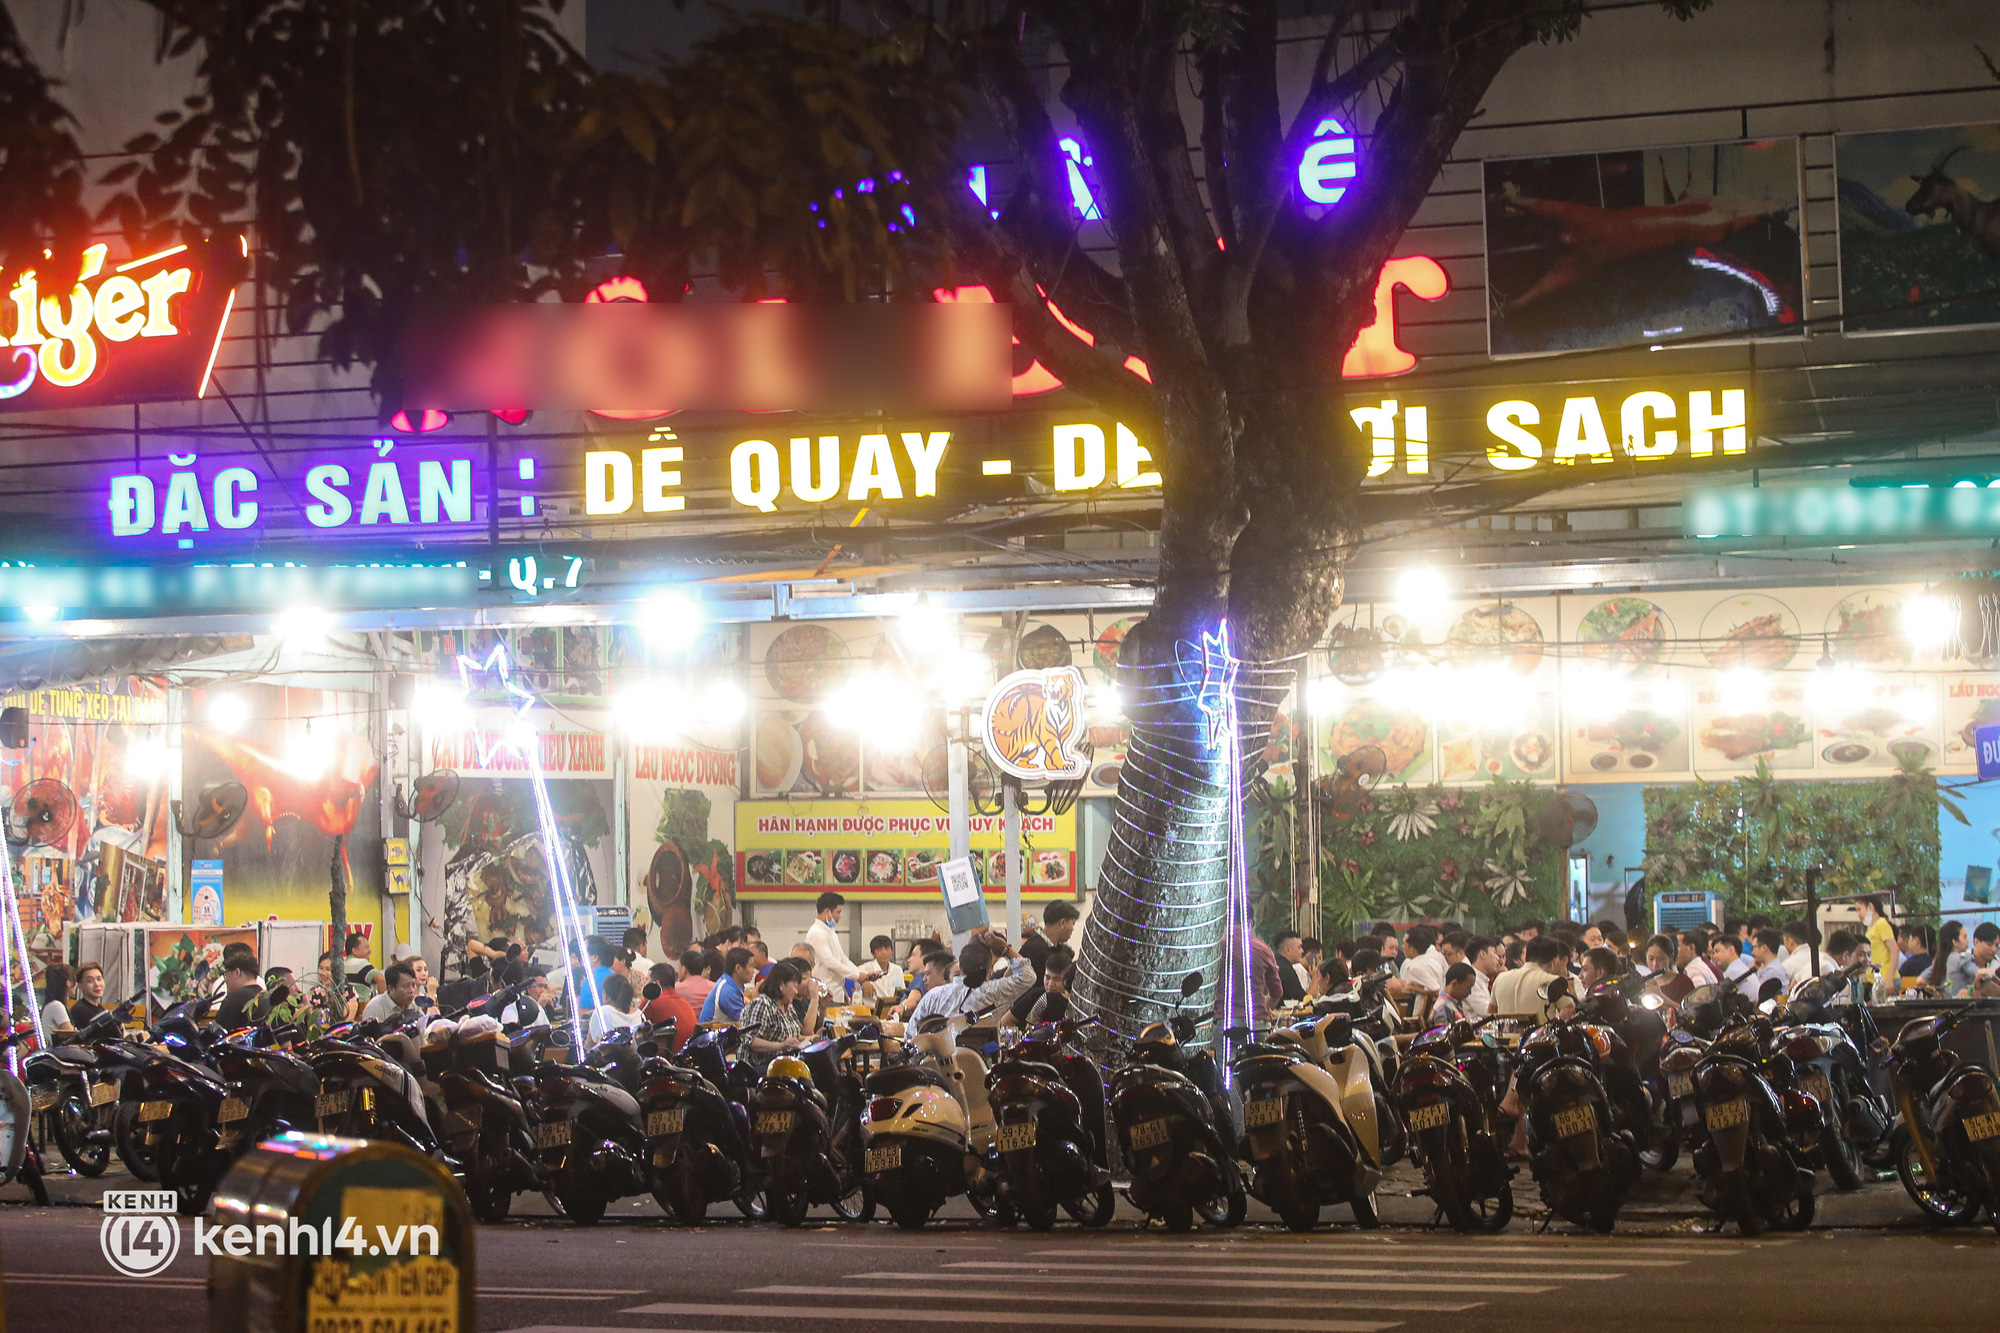 2 nơi hiếm hoi tại Sài Gòn được mở lại quán nhậu: Hàng quán đông vui hơn hẳn, tấp nập trở lại sau nhiều ngày đóng cửa - Ảnh 6.